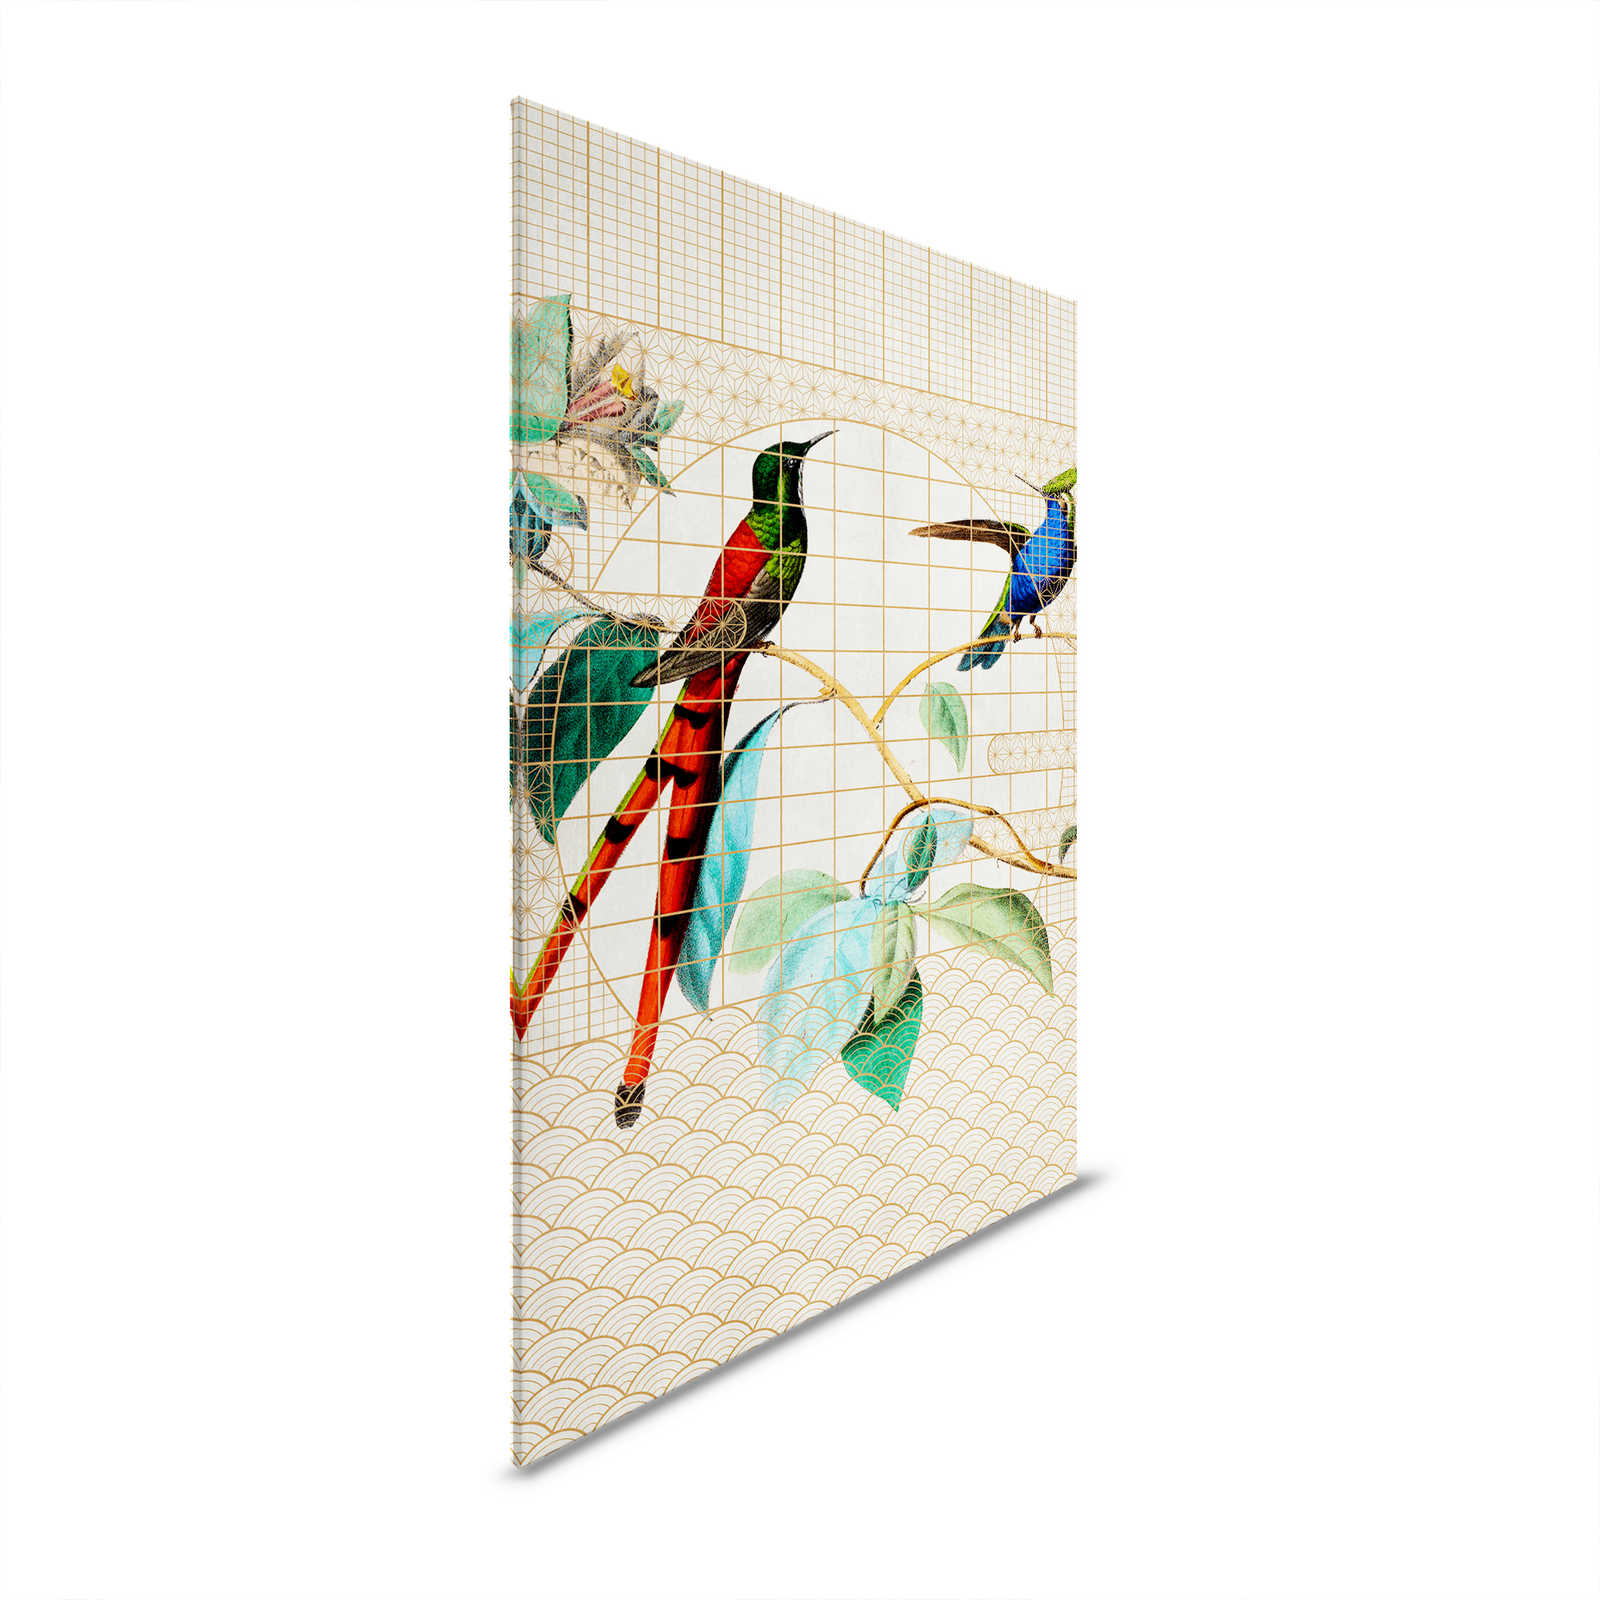 Voliera 2 - Uccelli Quadro su tela Uccelli canori in gabbia dorata - 1,20 m x 0,80 m
